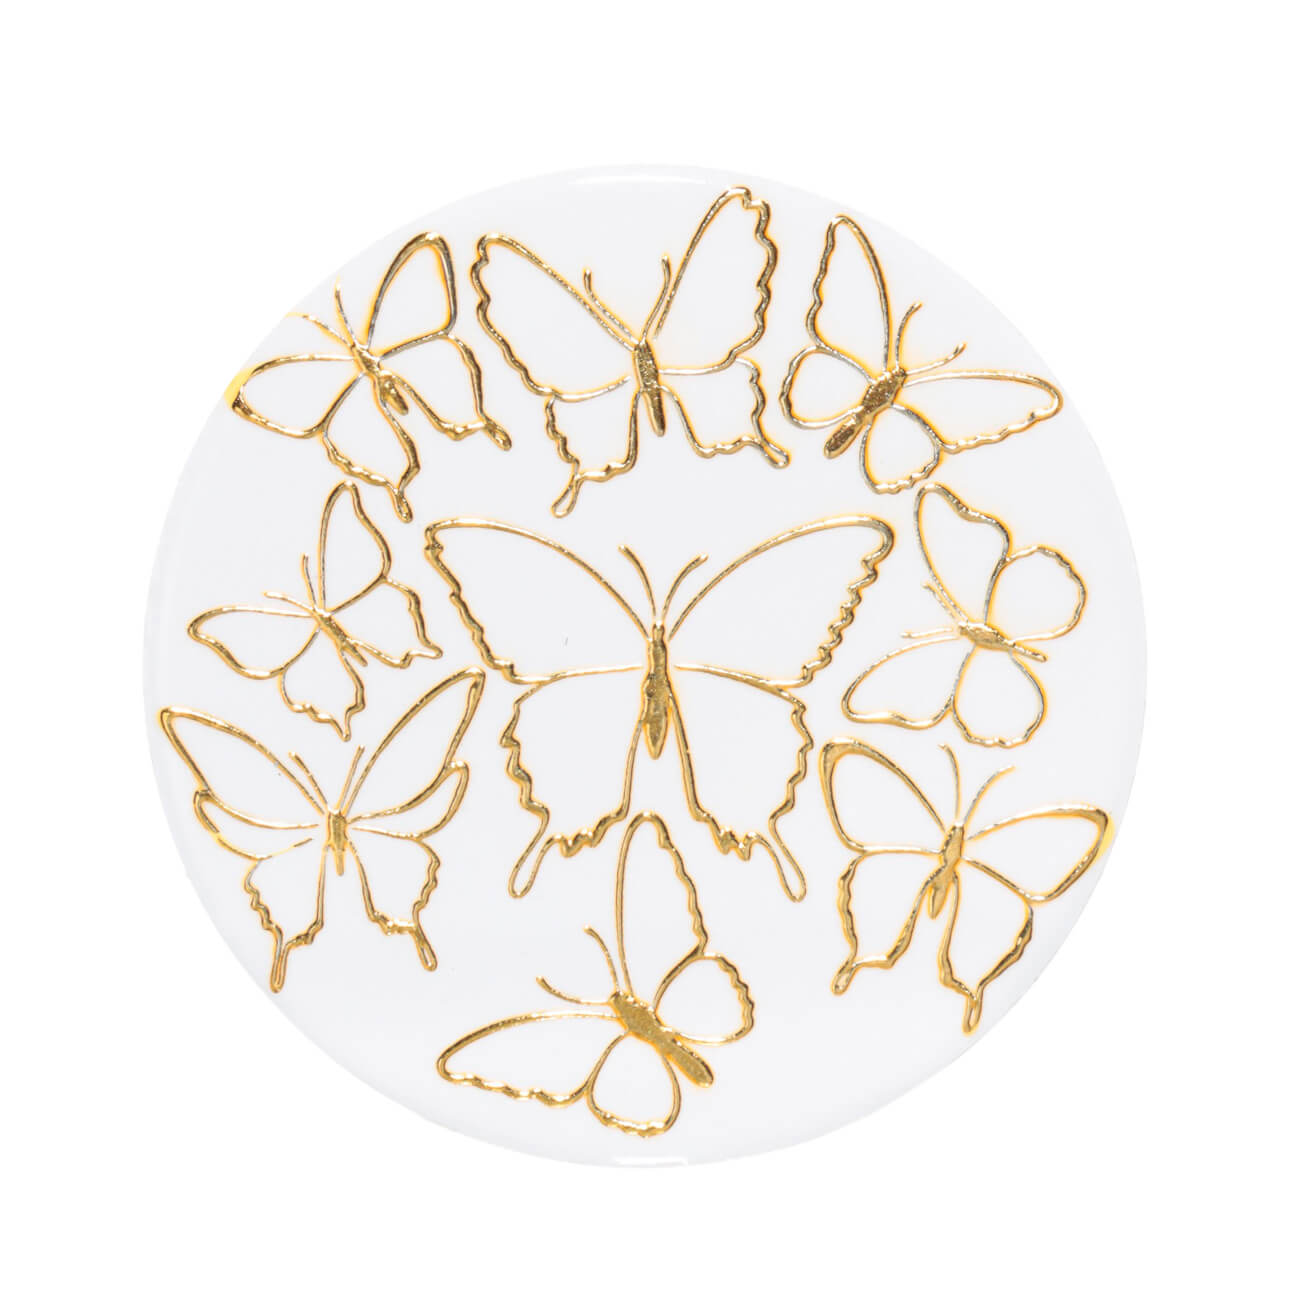 Подставка под кружку, 11 см, керамика/пробка, круглая, белая, Золотистые бабочки, Butterfly подставка под турку кольчугинский мельхиор бабочки